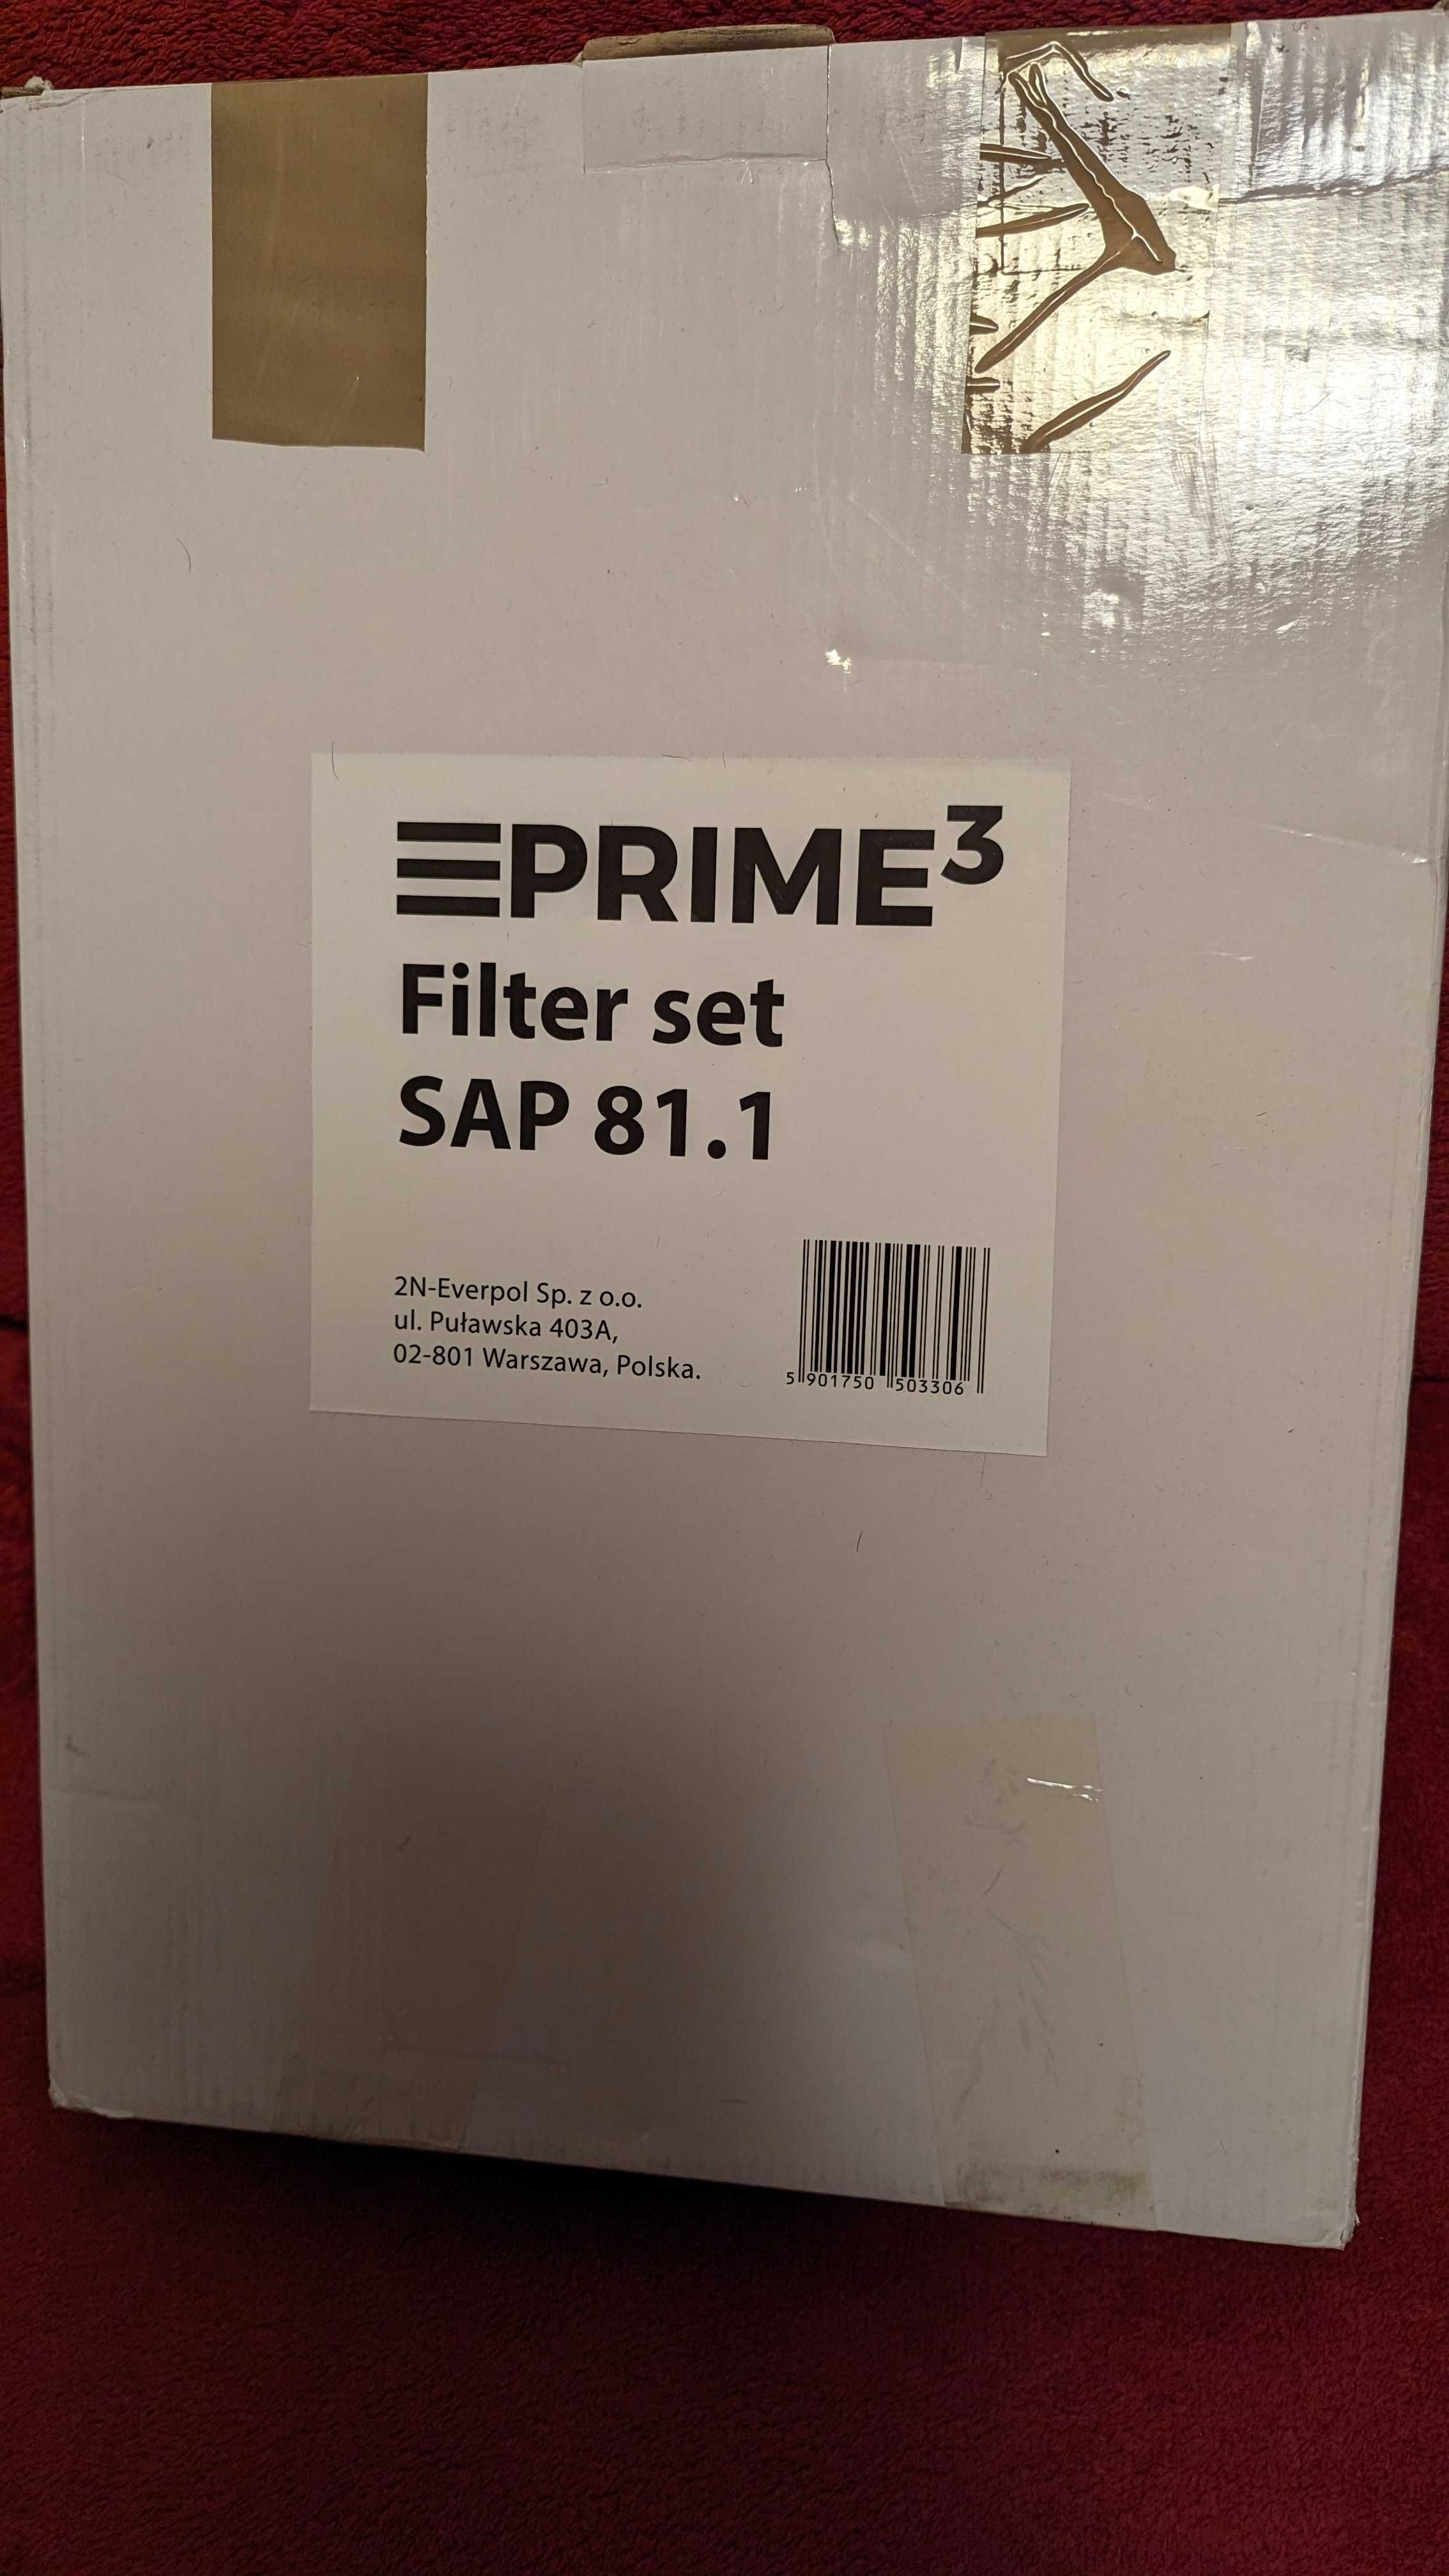 Zestaw filtrów do oczyszczacza PRIME3 SAP81